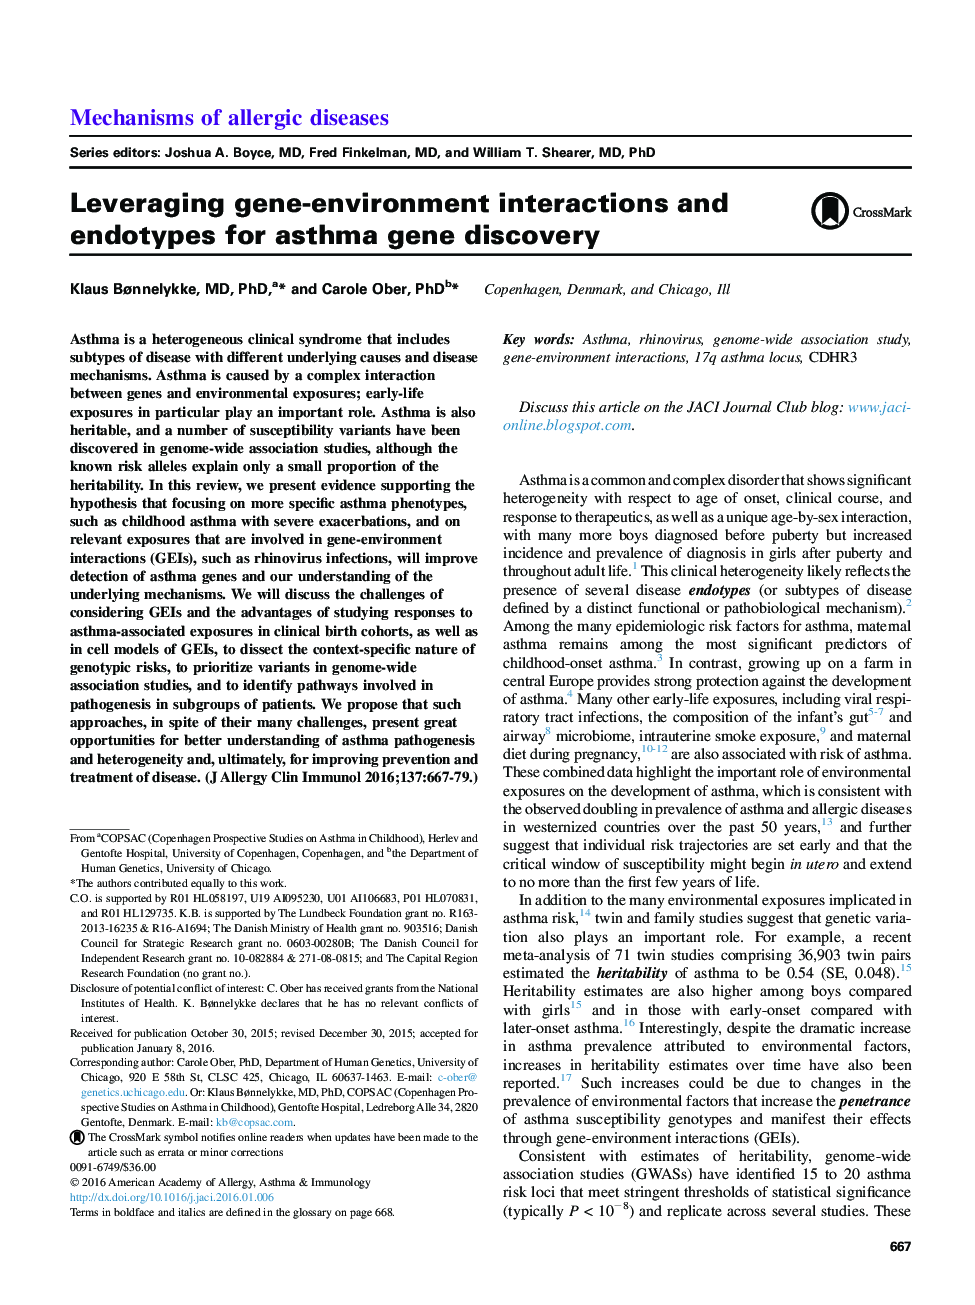 تعاملات محیط ژن و محیط و اندوتایپ ها برای کشف ژن آسم 